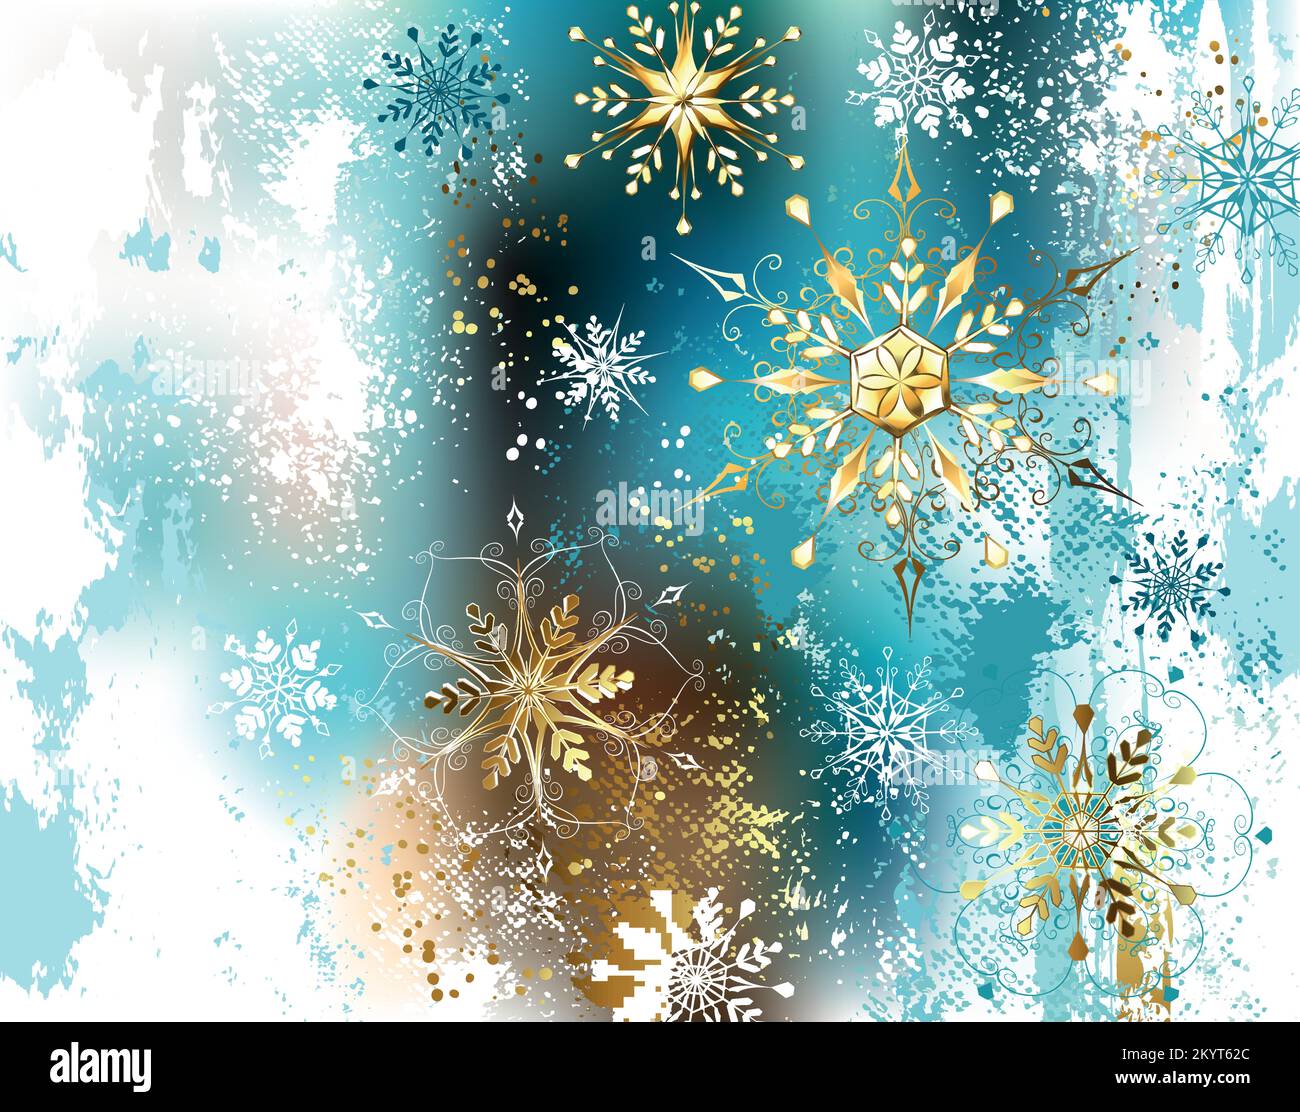 Natale, sfondo invernale, dipinto di blu, bianco, dorato con oro, lucido, fiocchi di neve gioiellato. Fiocchi di neve dorati. Illustrazione Vettoriale